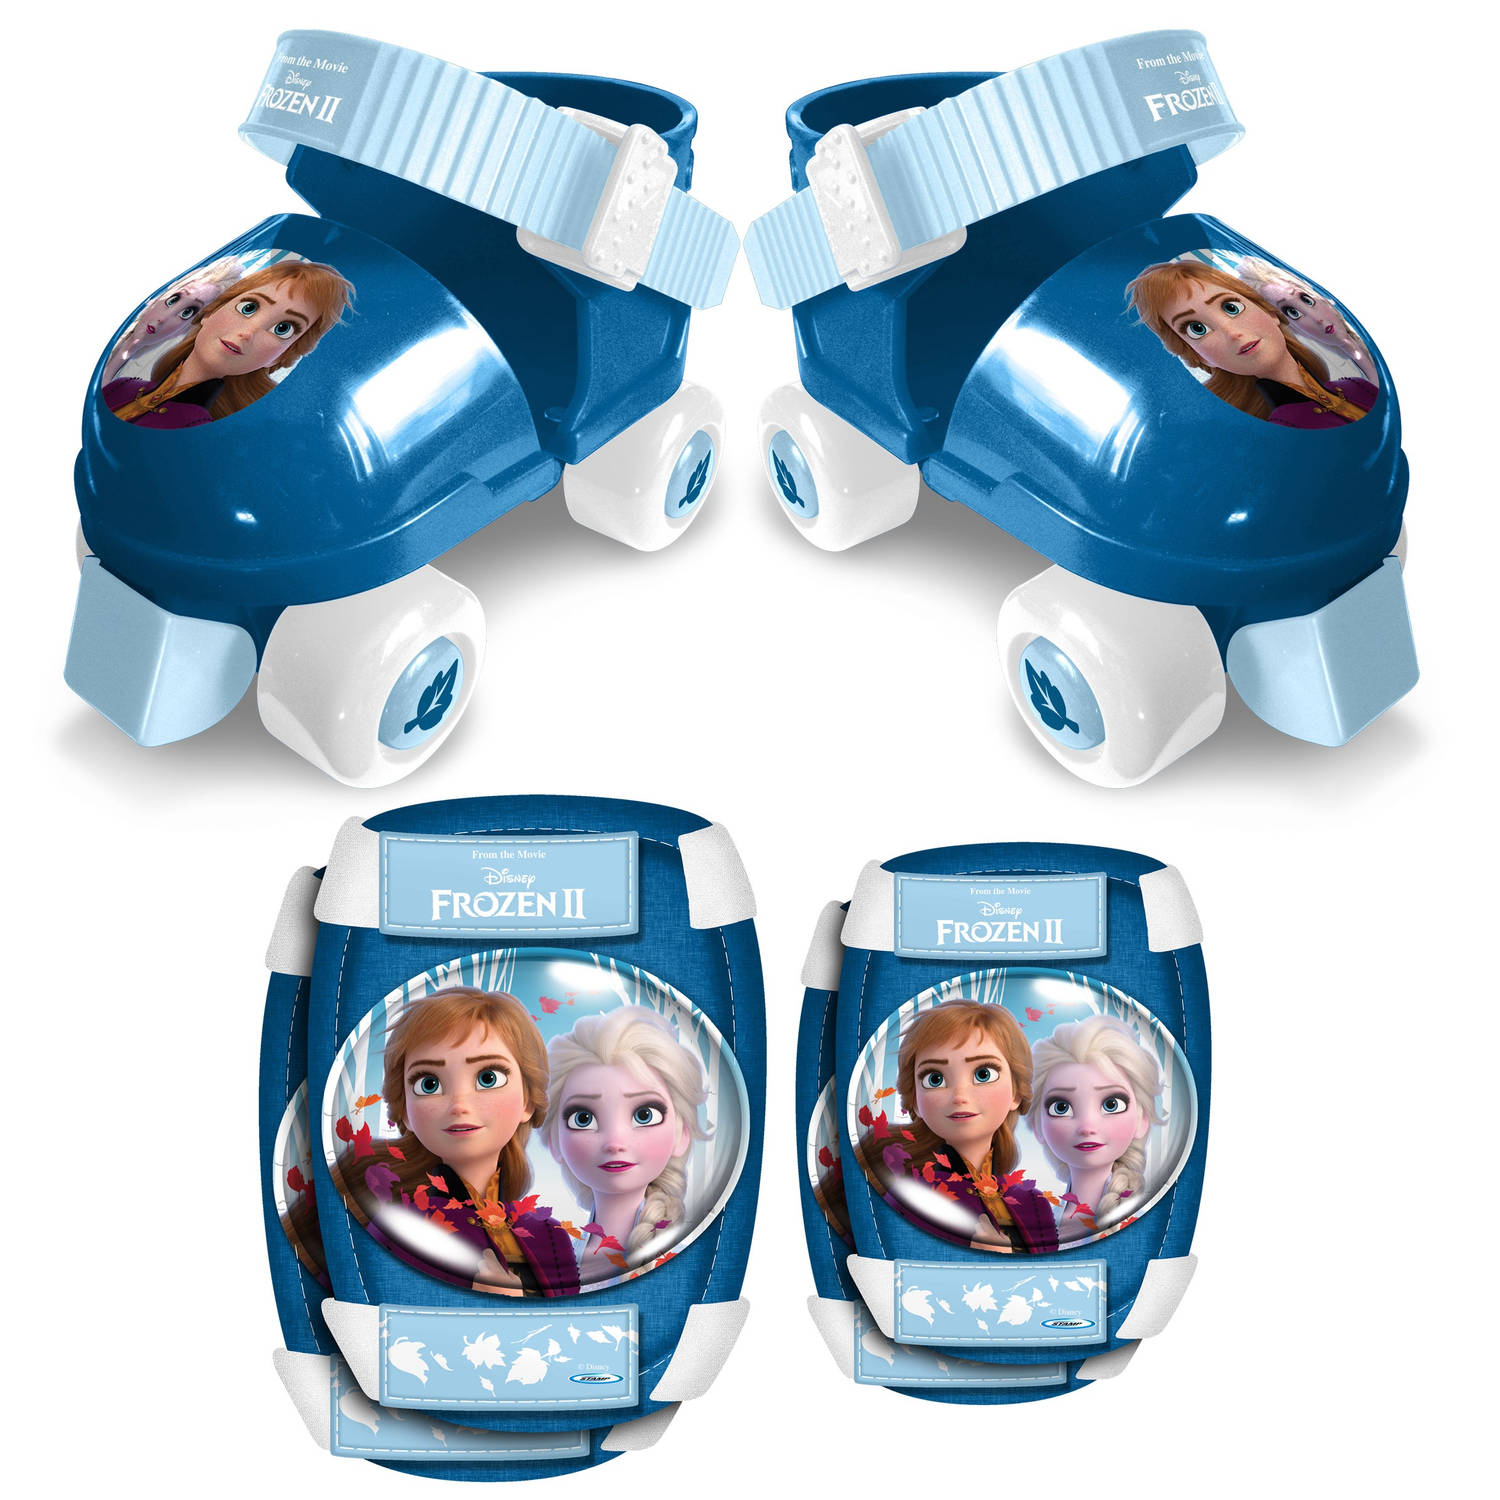 Disney rolschaatsen met bescherming Frozen 2 blauw maat 23 27